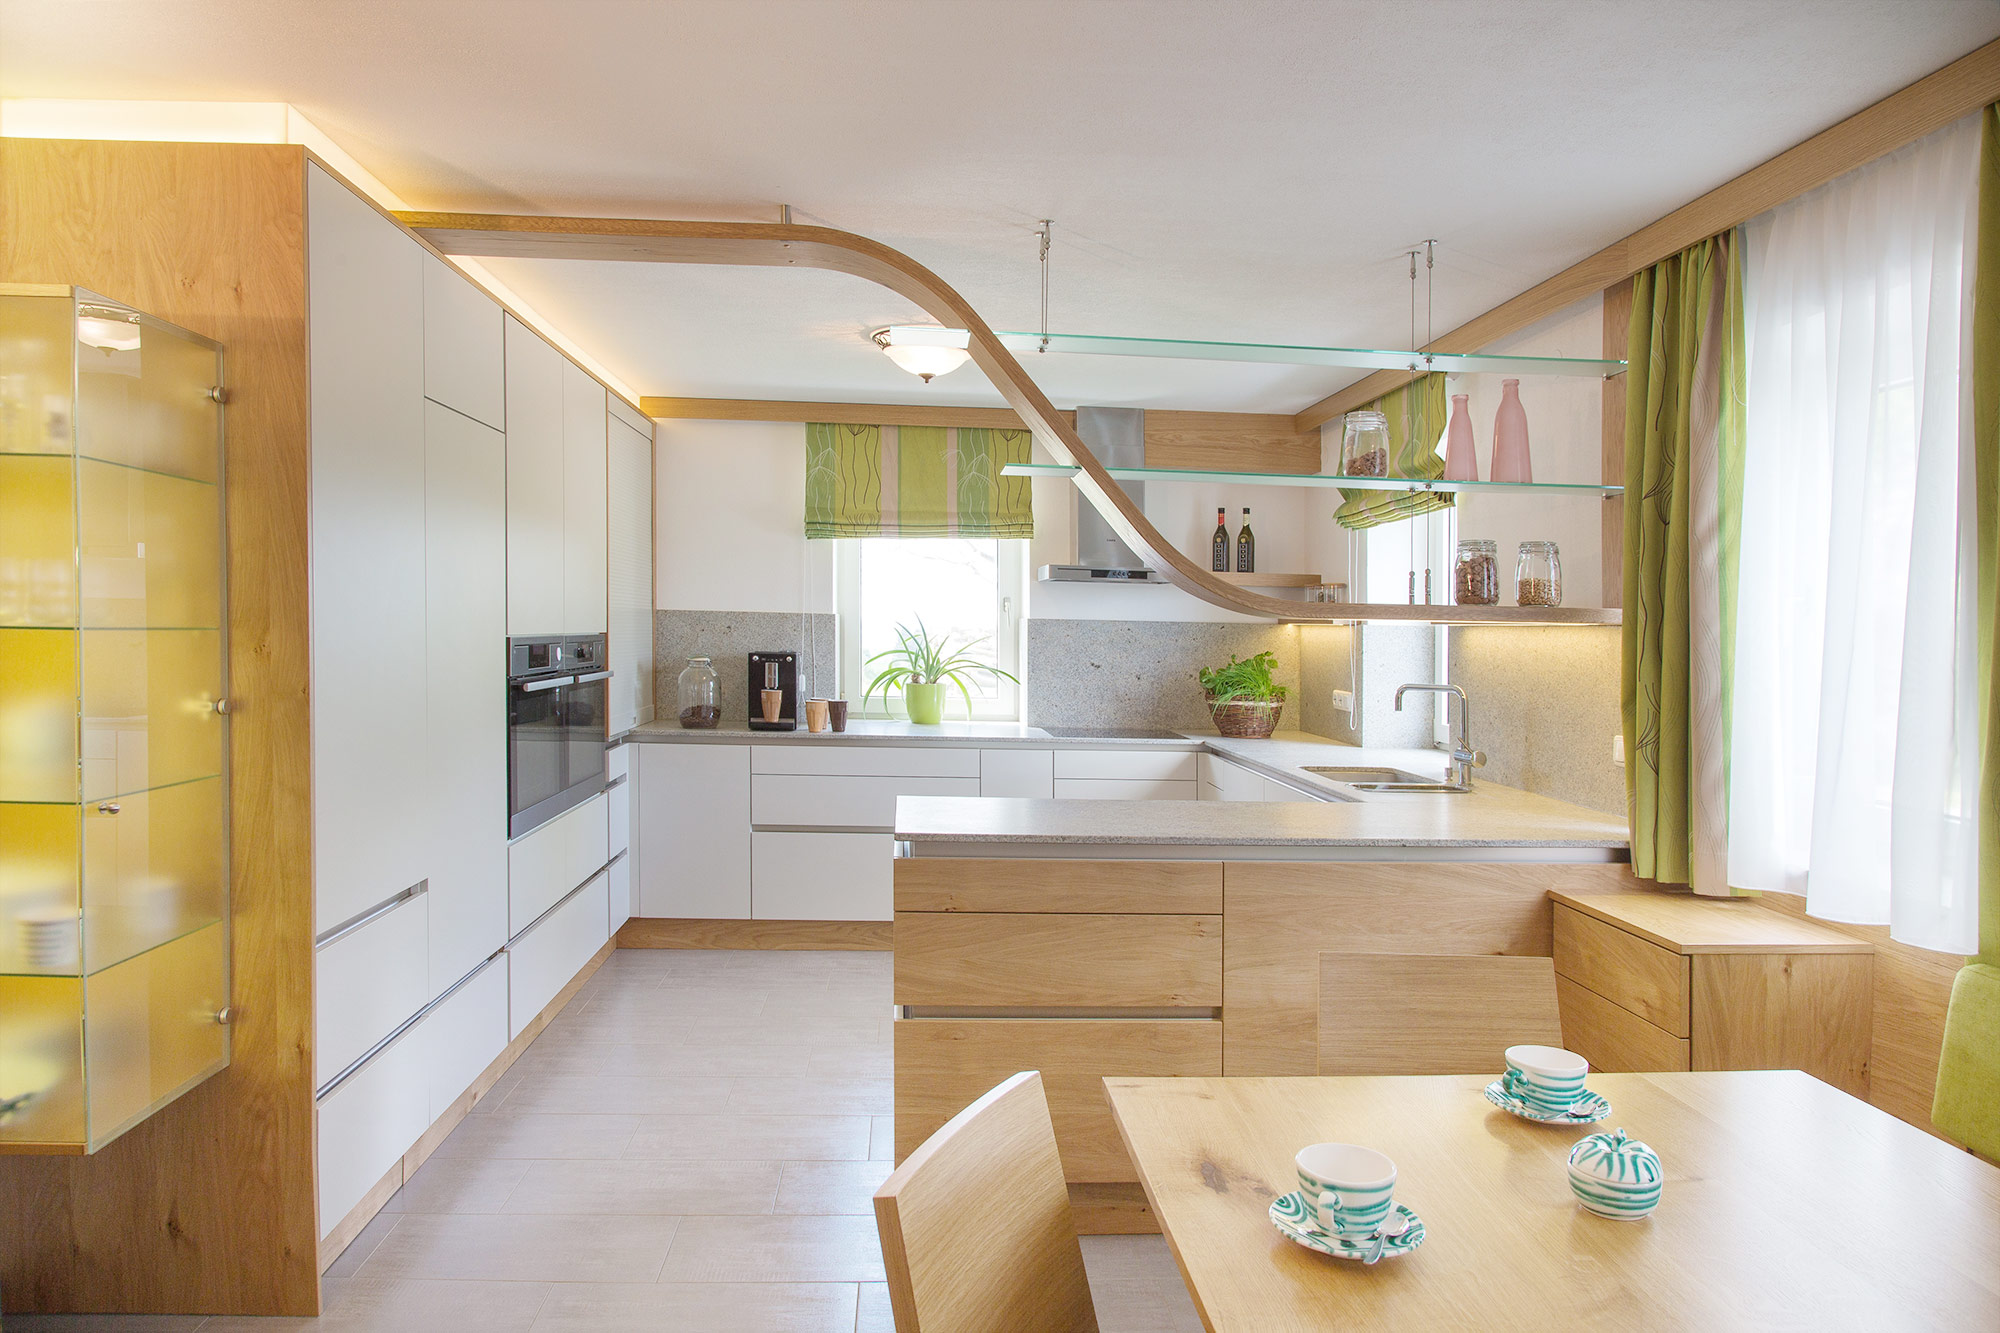 Moderne Küche in Eichenholz - Design aus dem Salzkammergut